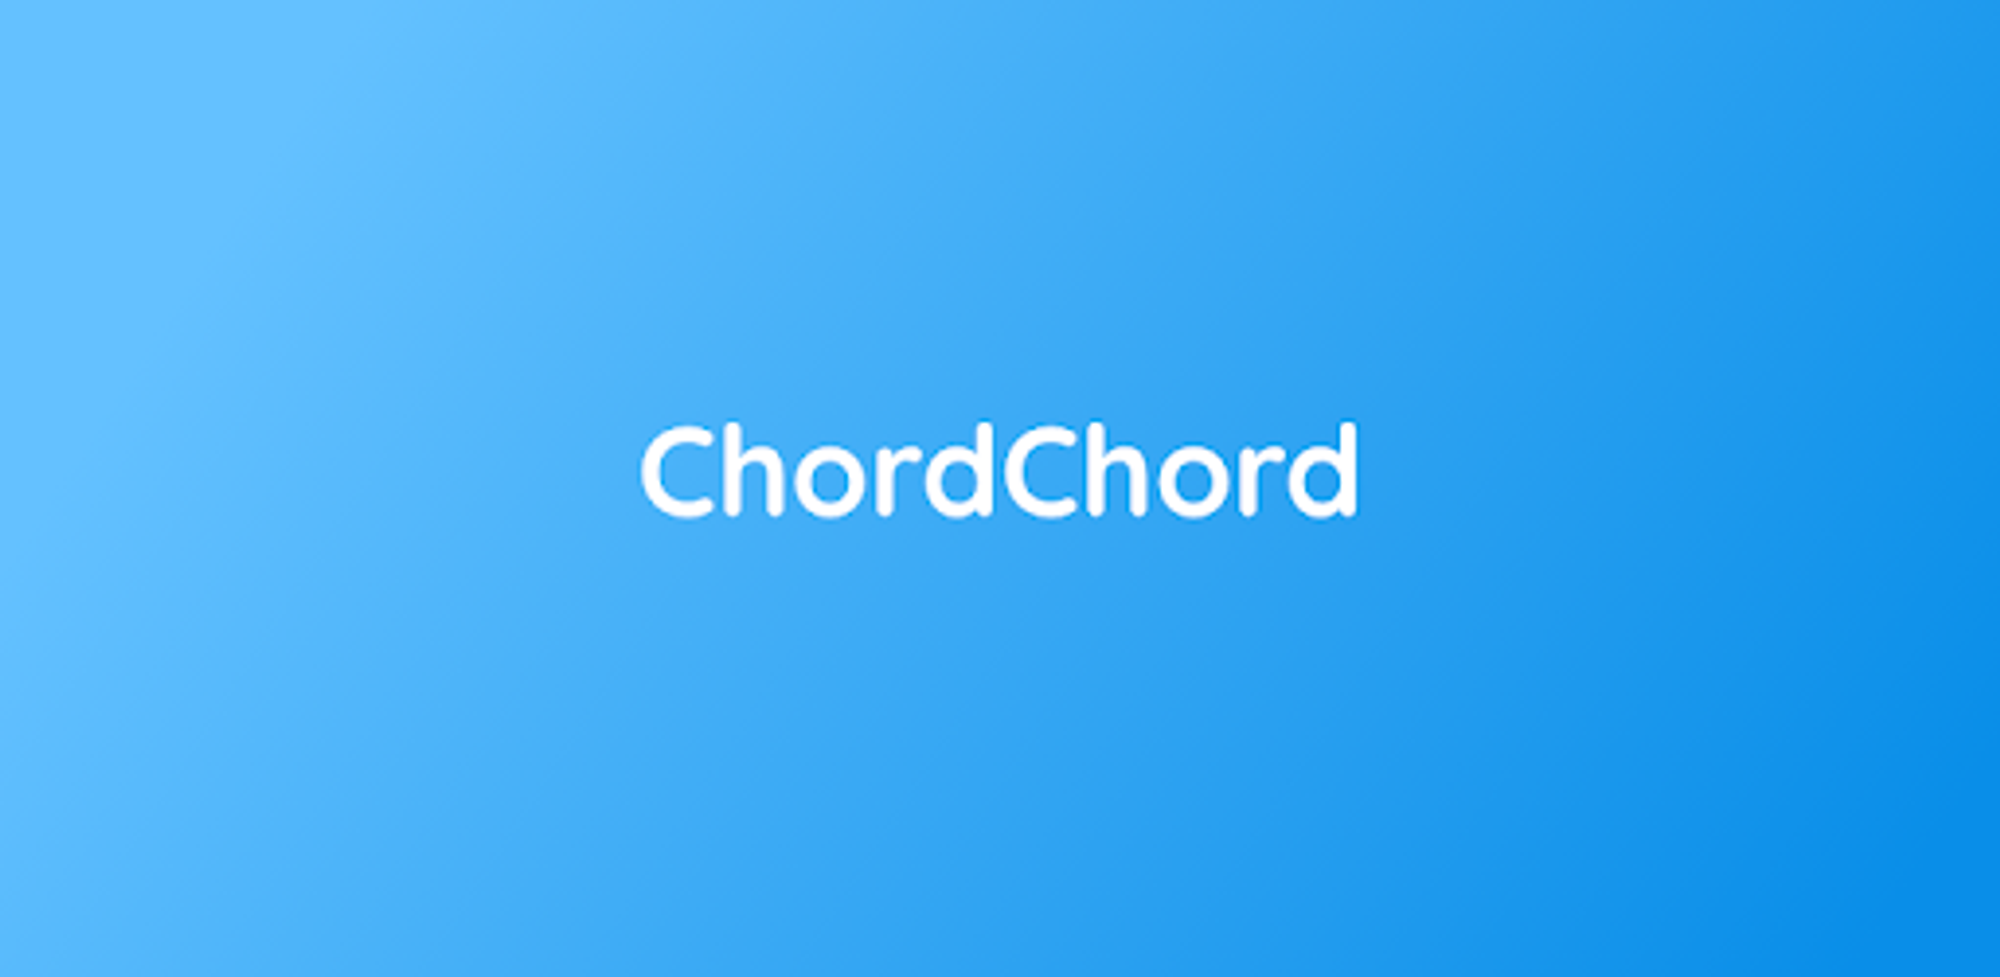 ChordChord